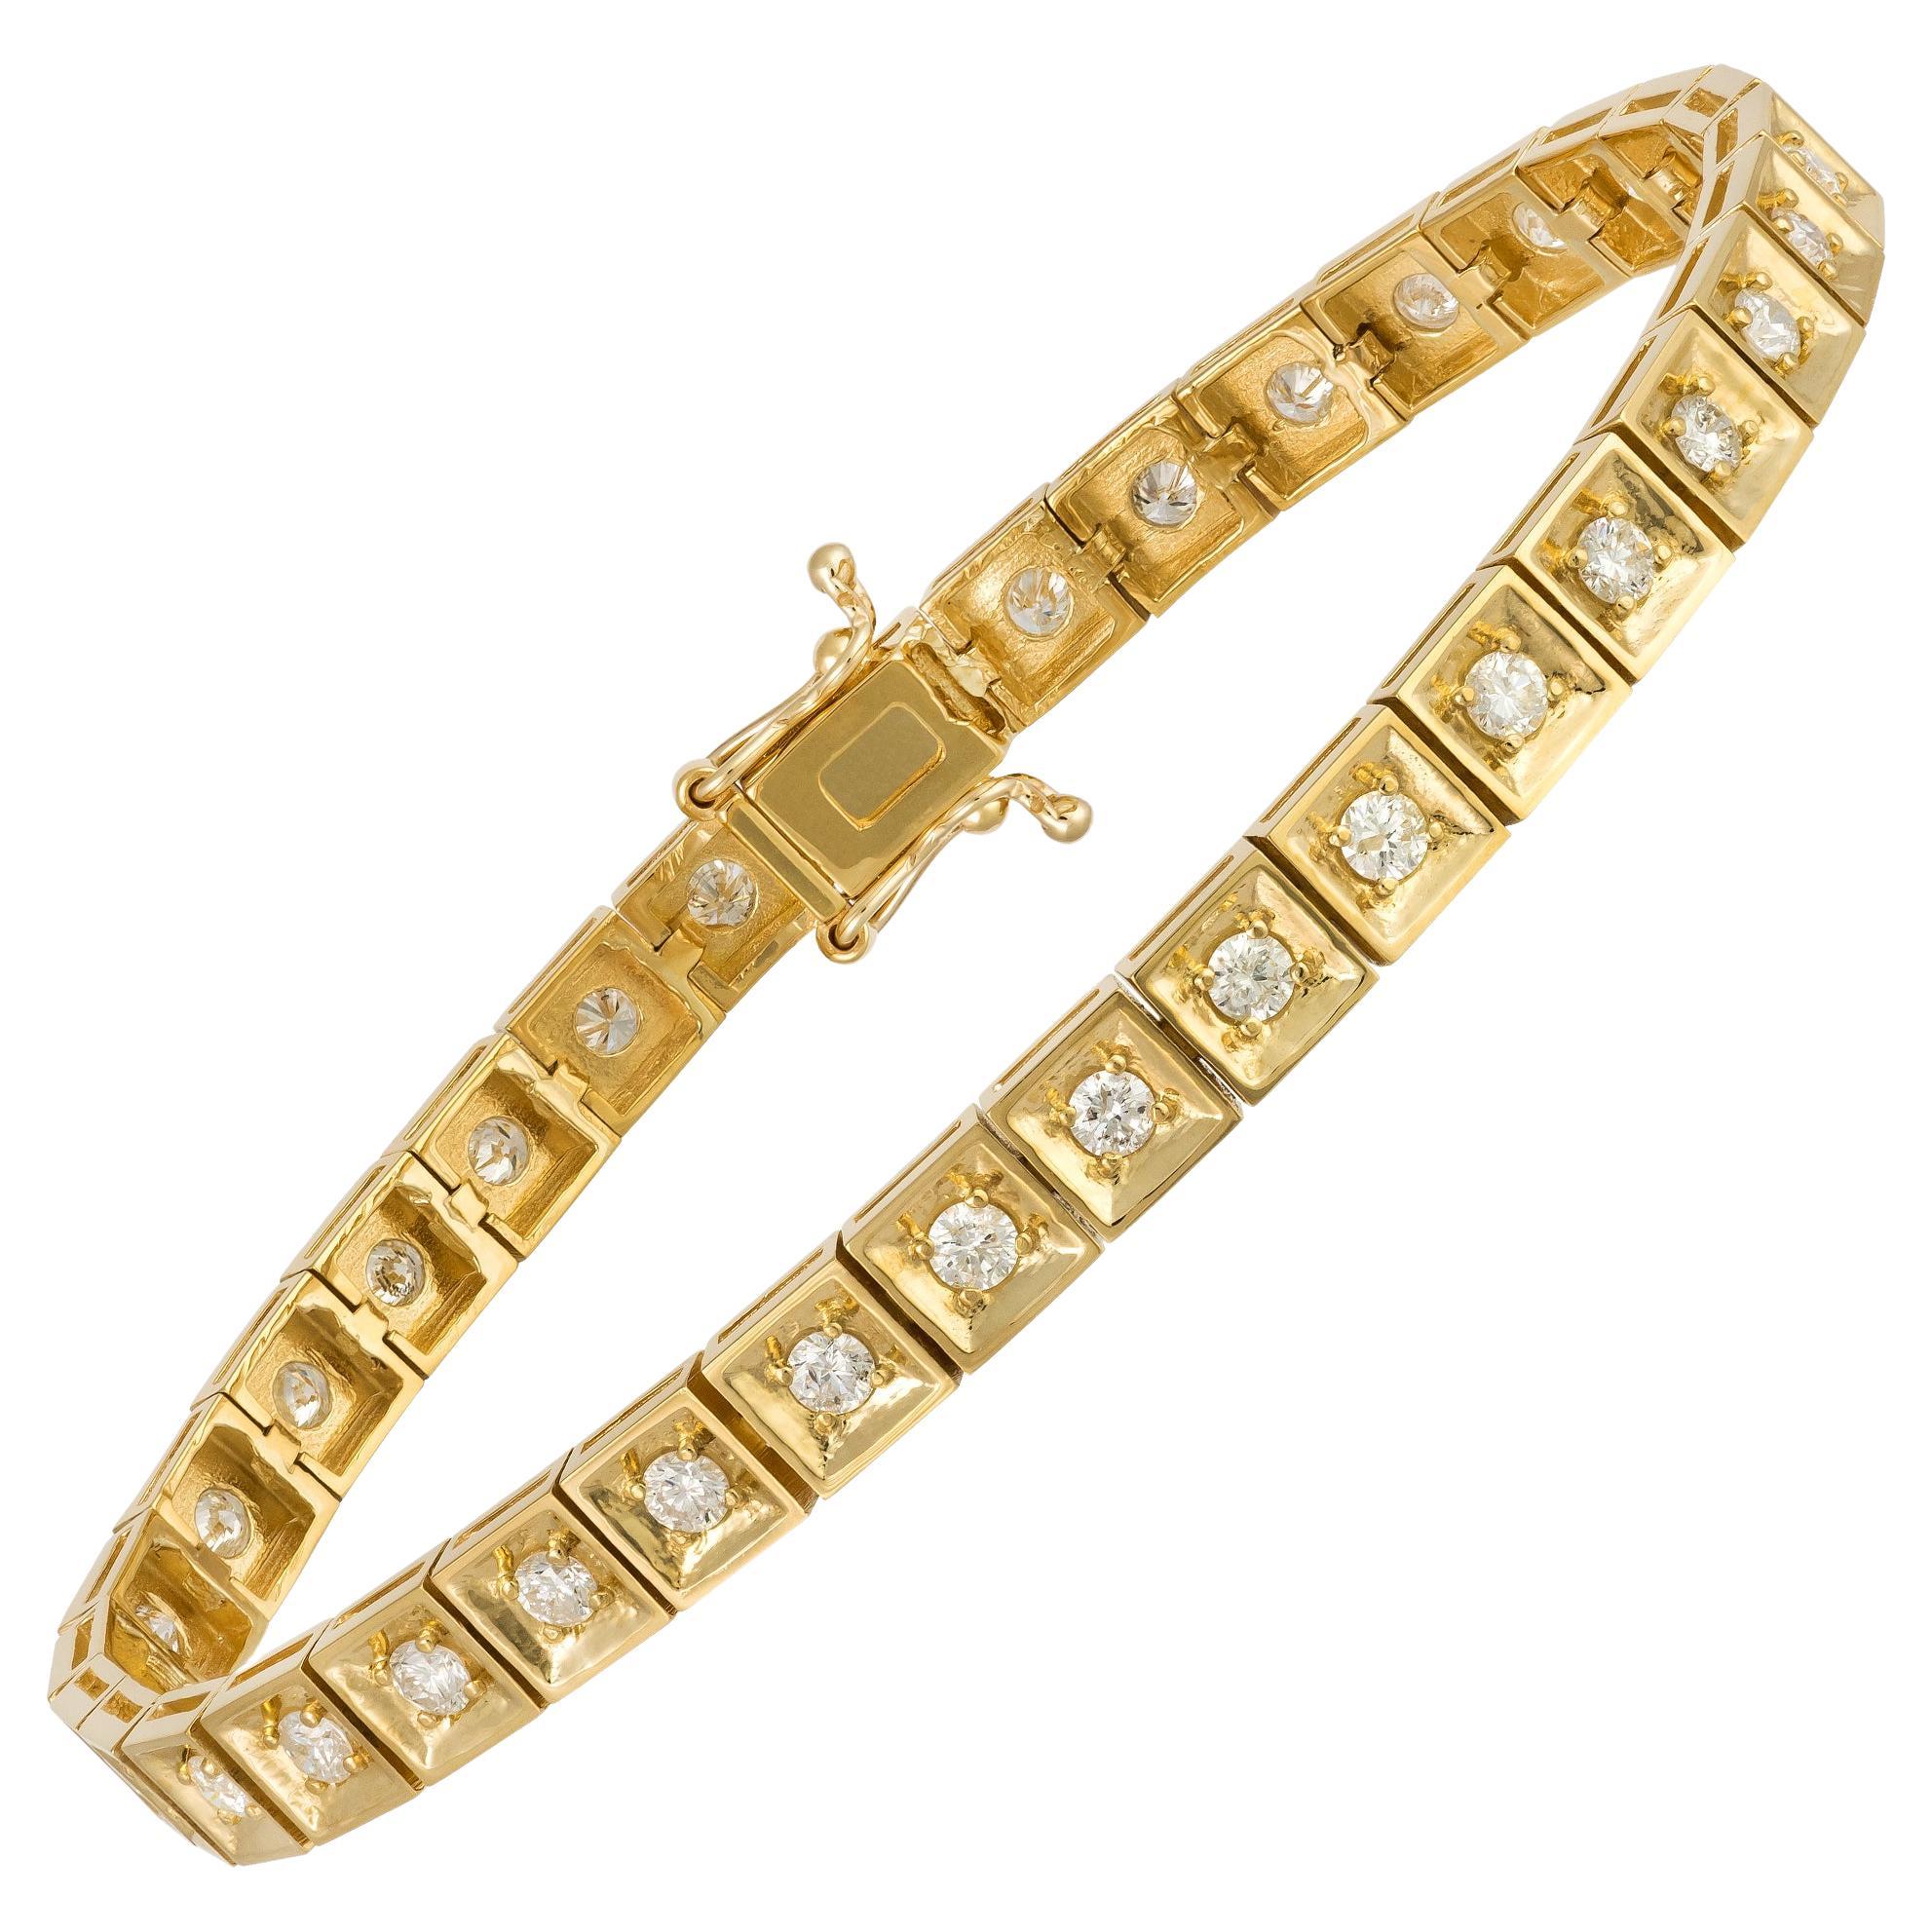 Impressive Yellow Gold 18K Bracelet Diamond for Her